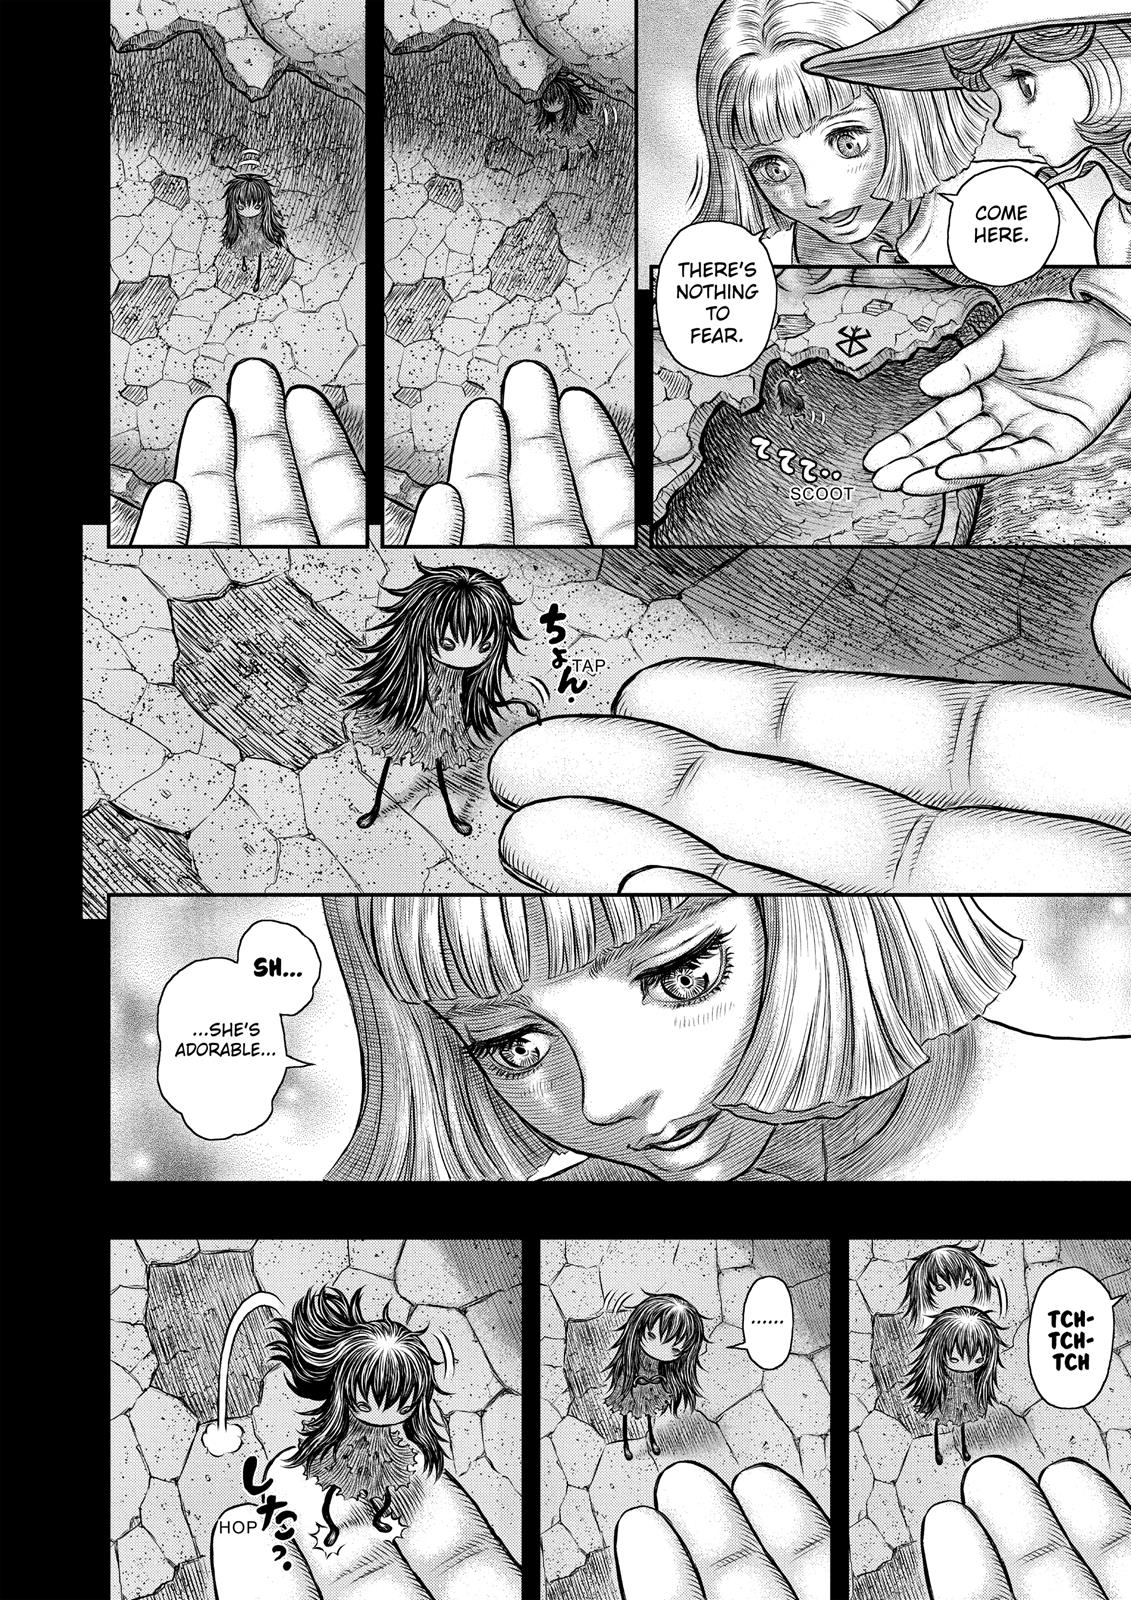 Berserk Manga Chapter 348 image 17